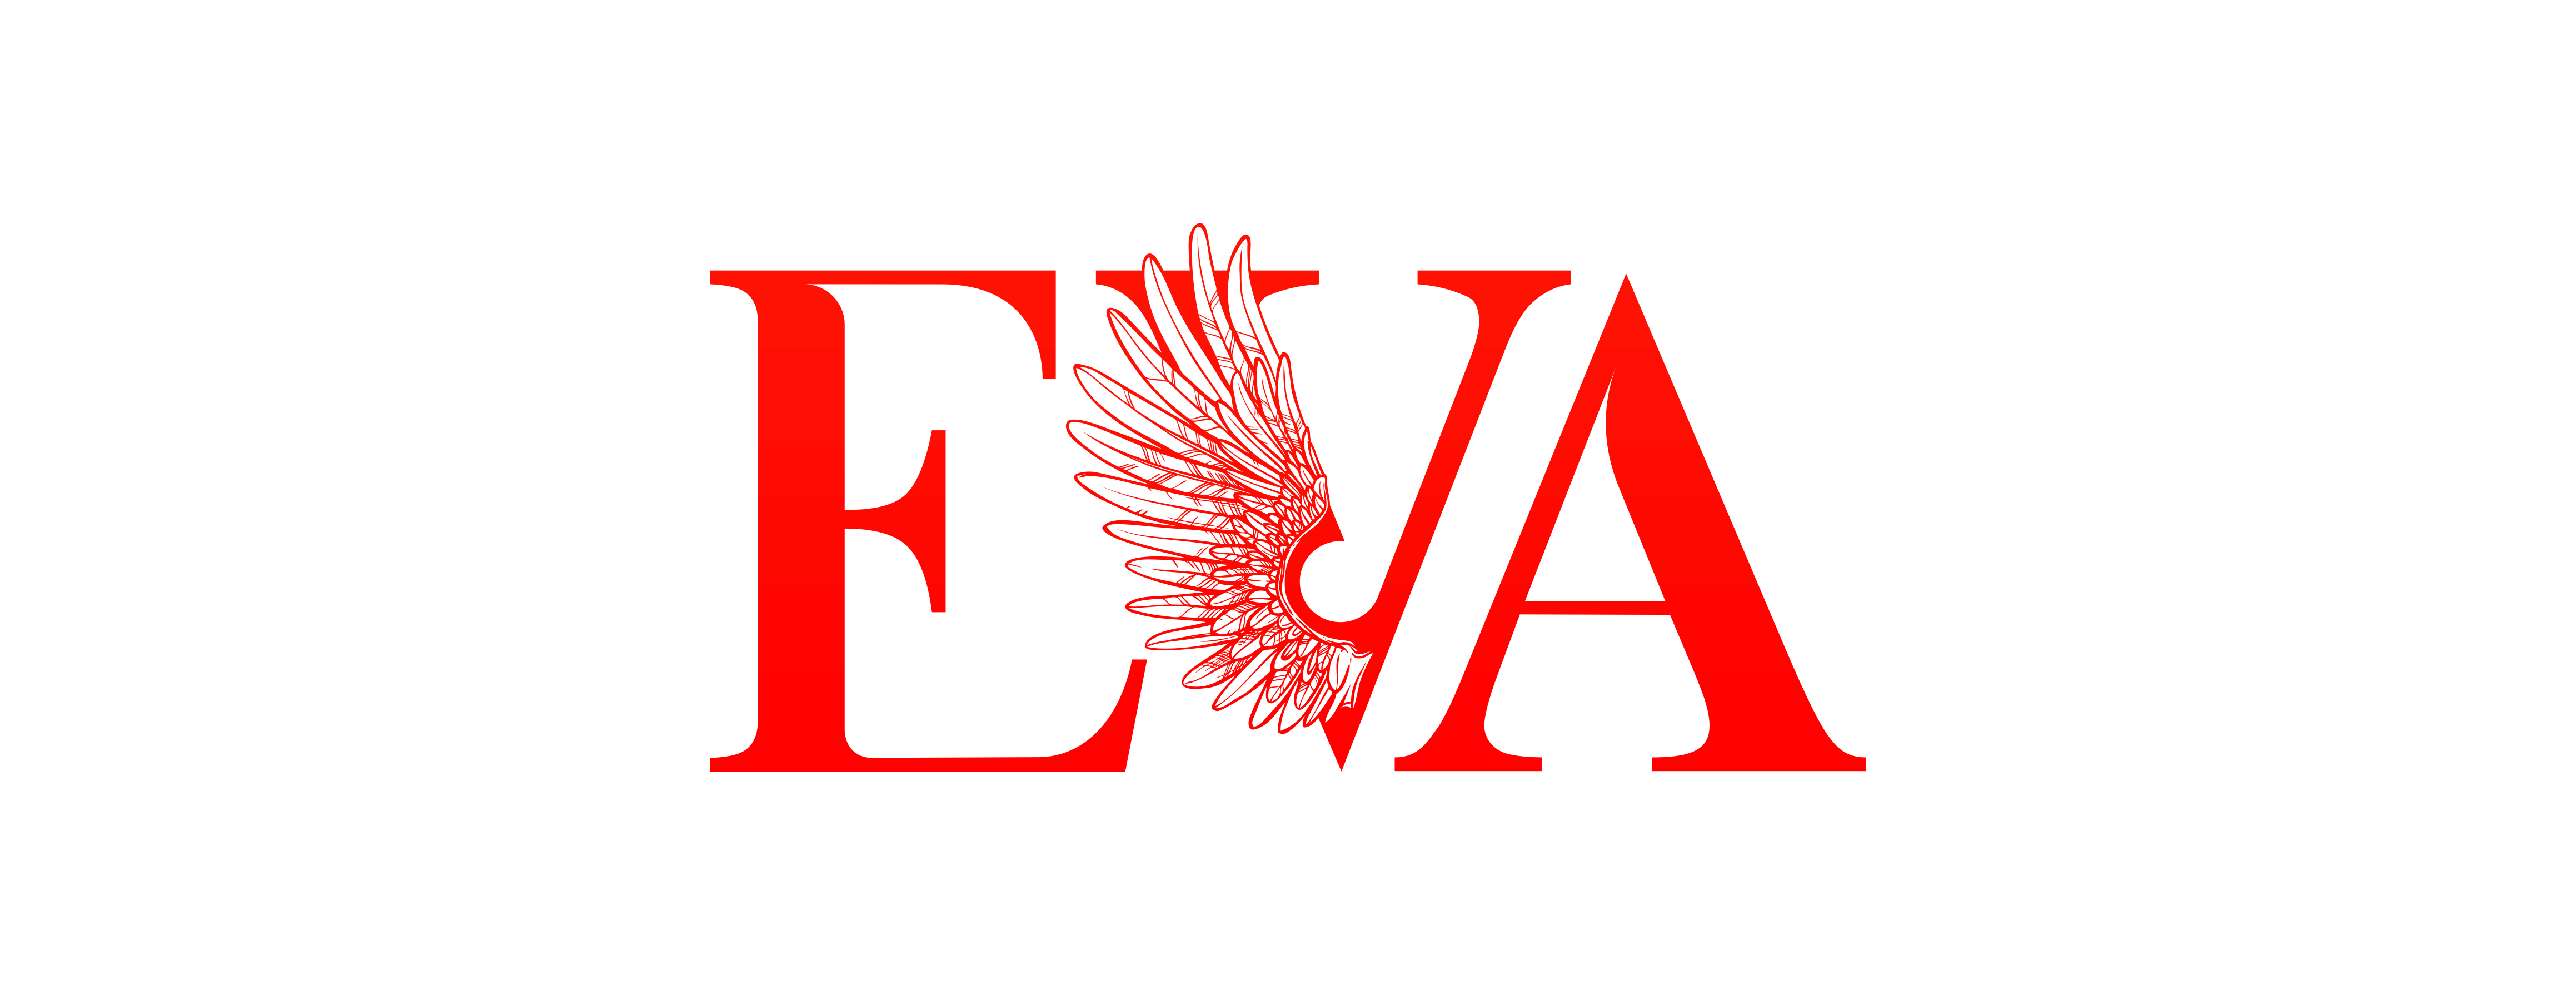 Прода ев. Eva логотип. Eva надпись. Эмблемы для Eva.